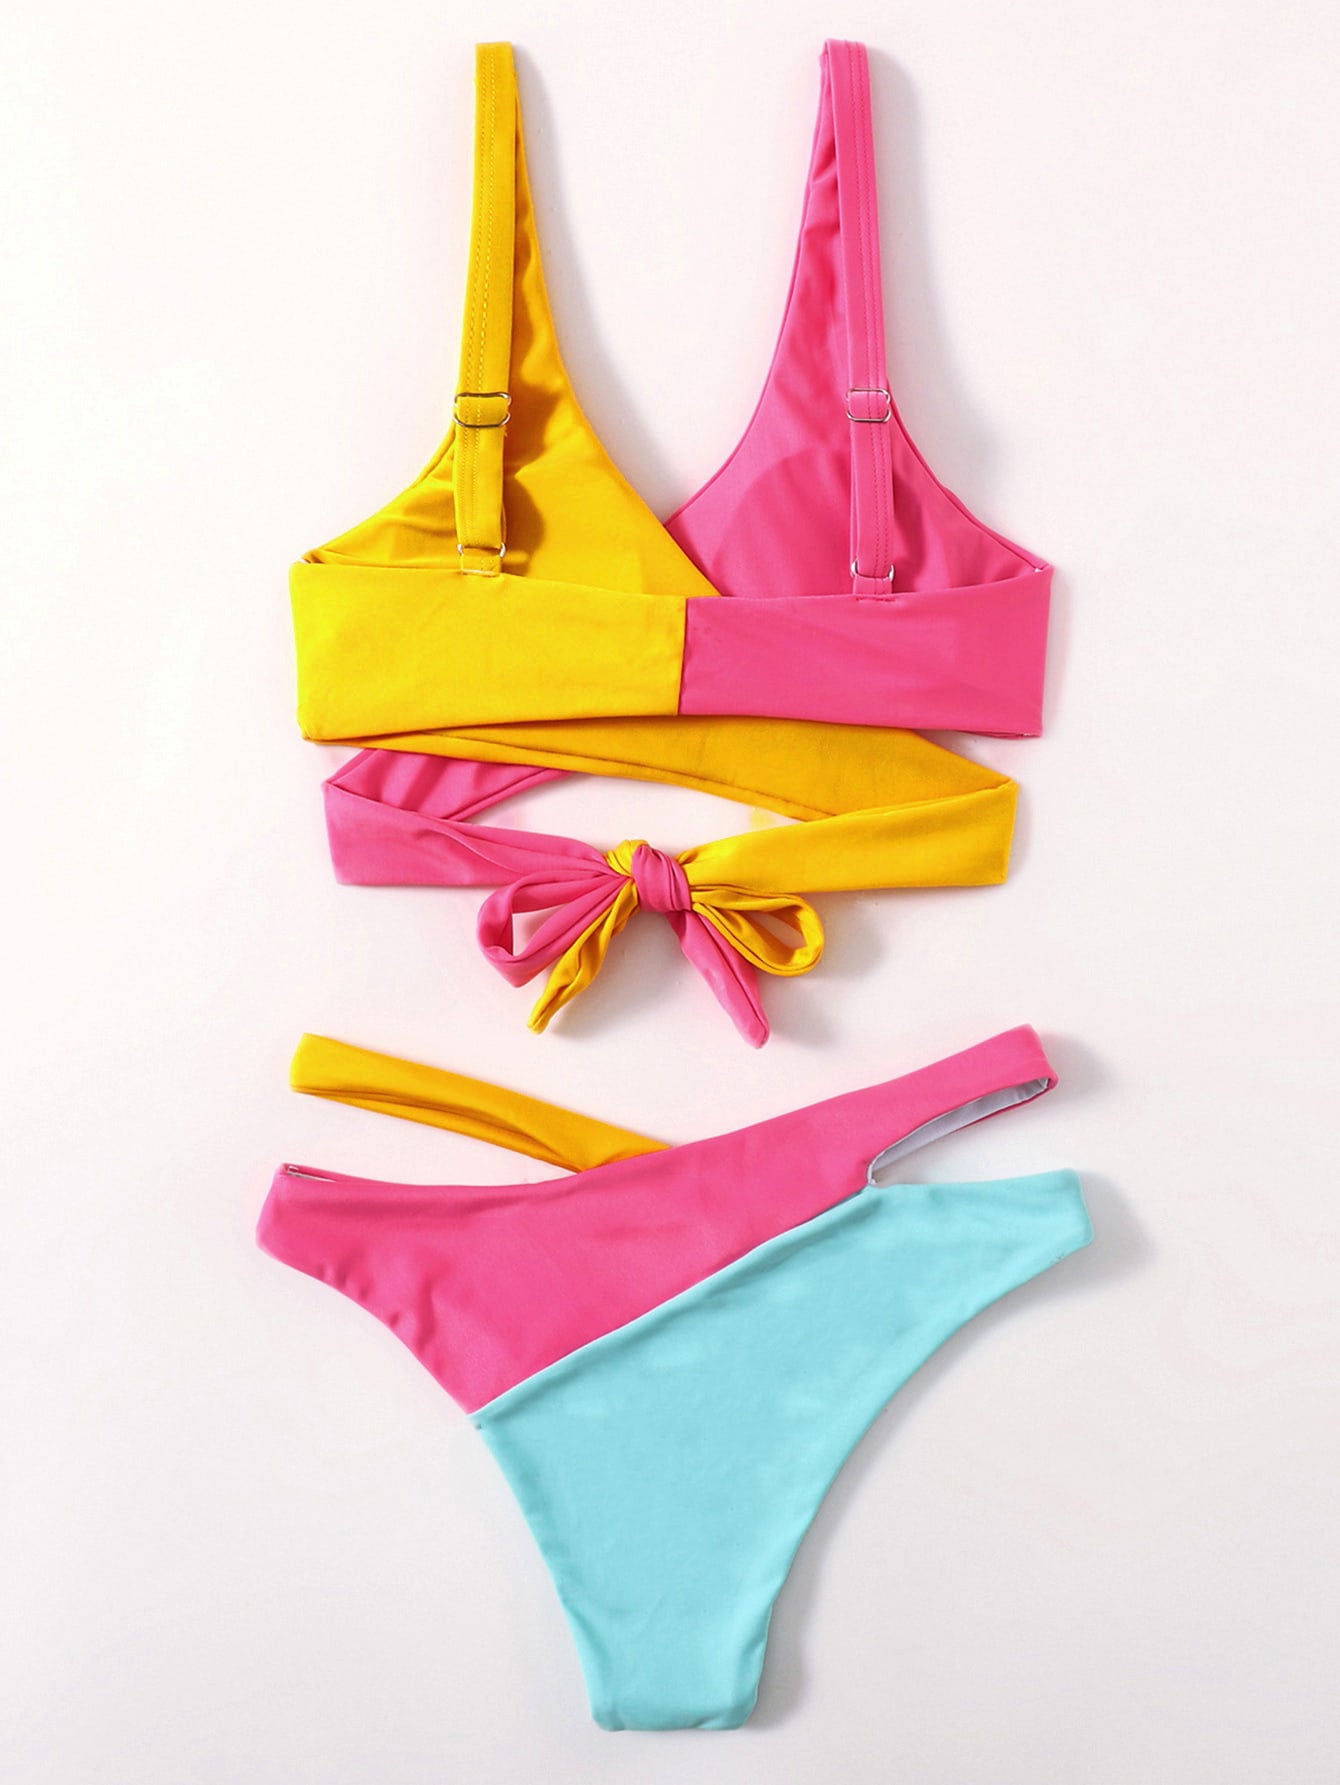 Two-Tone Wrap Bikini in Pink and Yellow